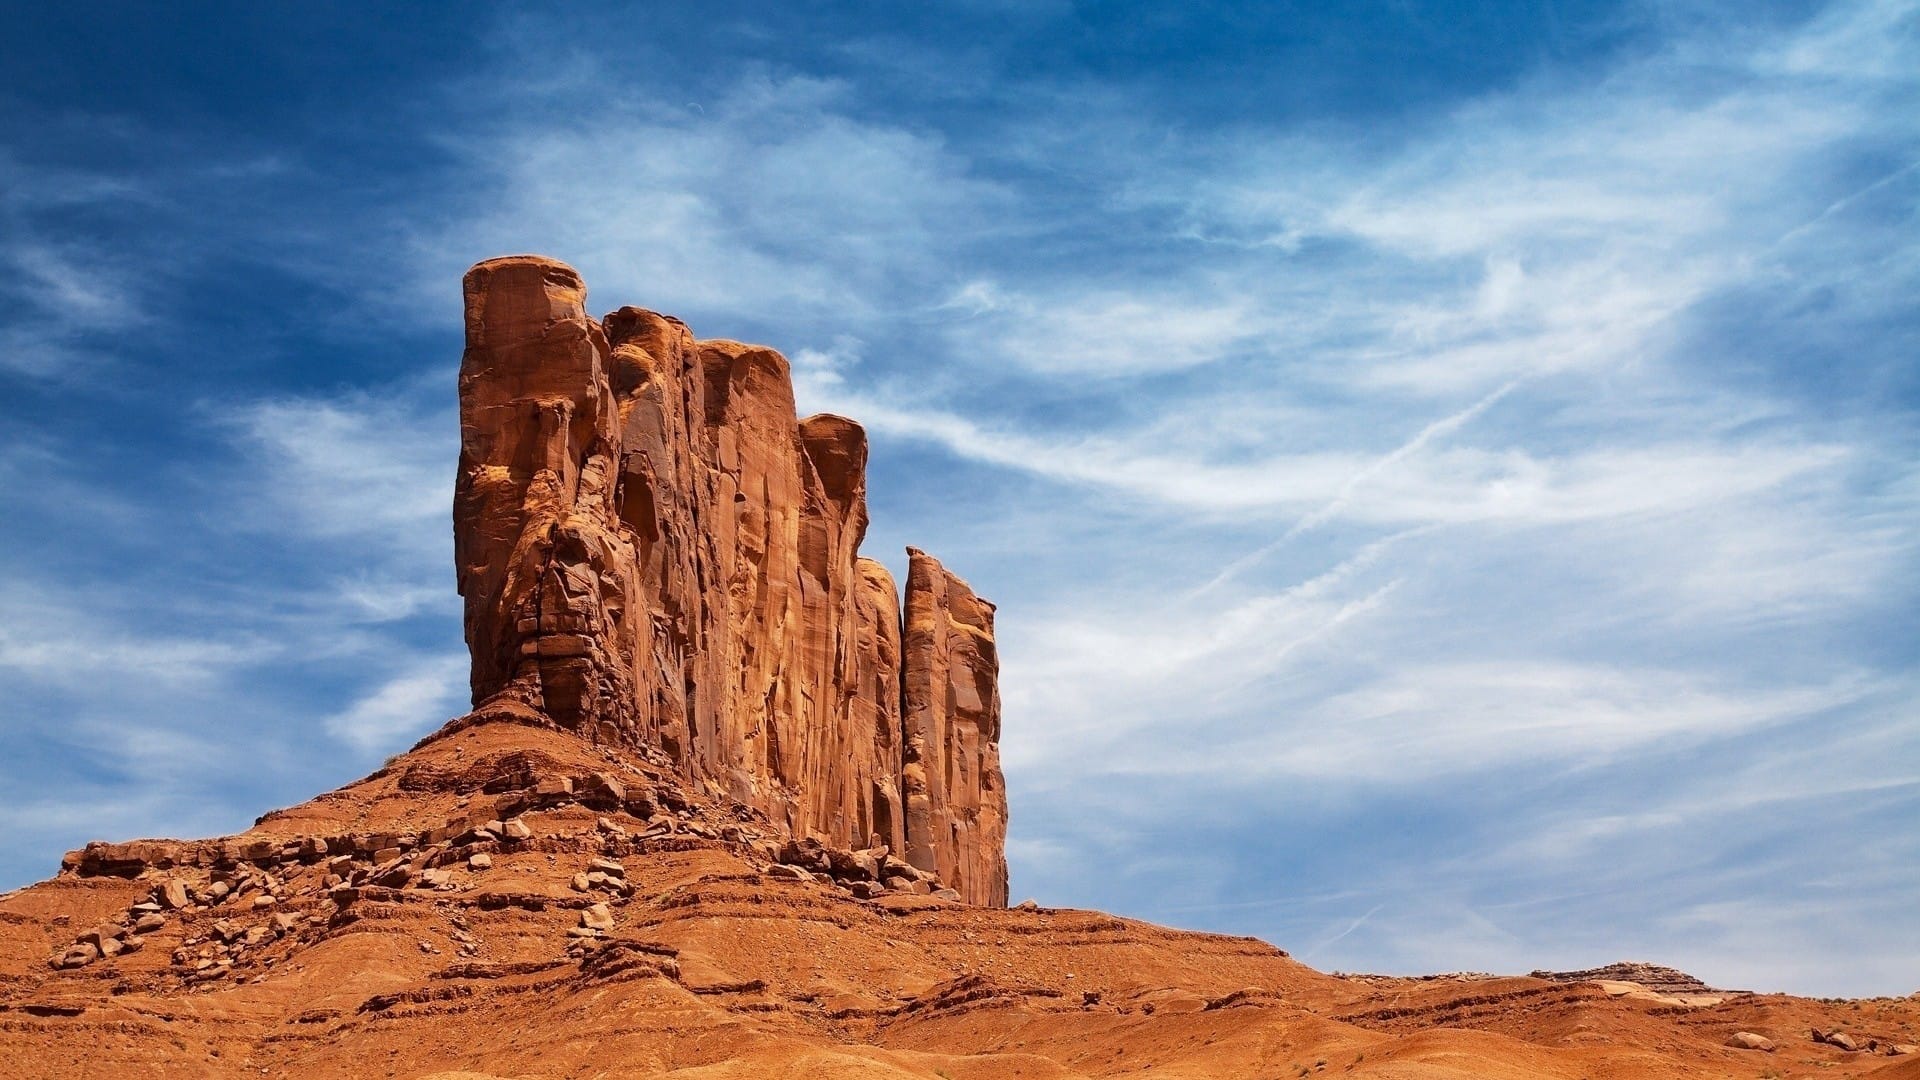 茫茫戈壁路大漠风沙情峡谷自然风光风景图片壁纸